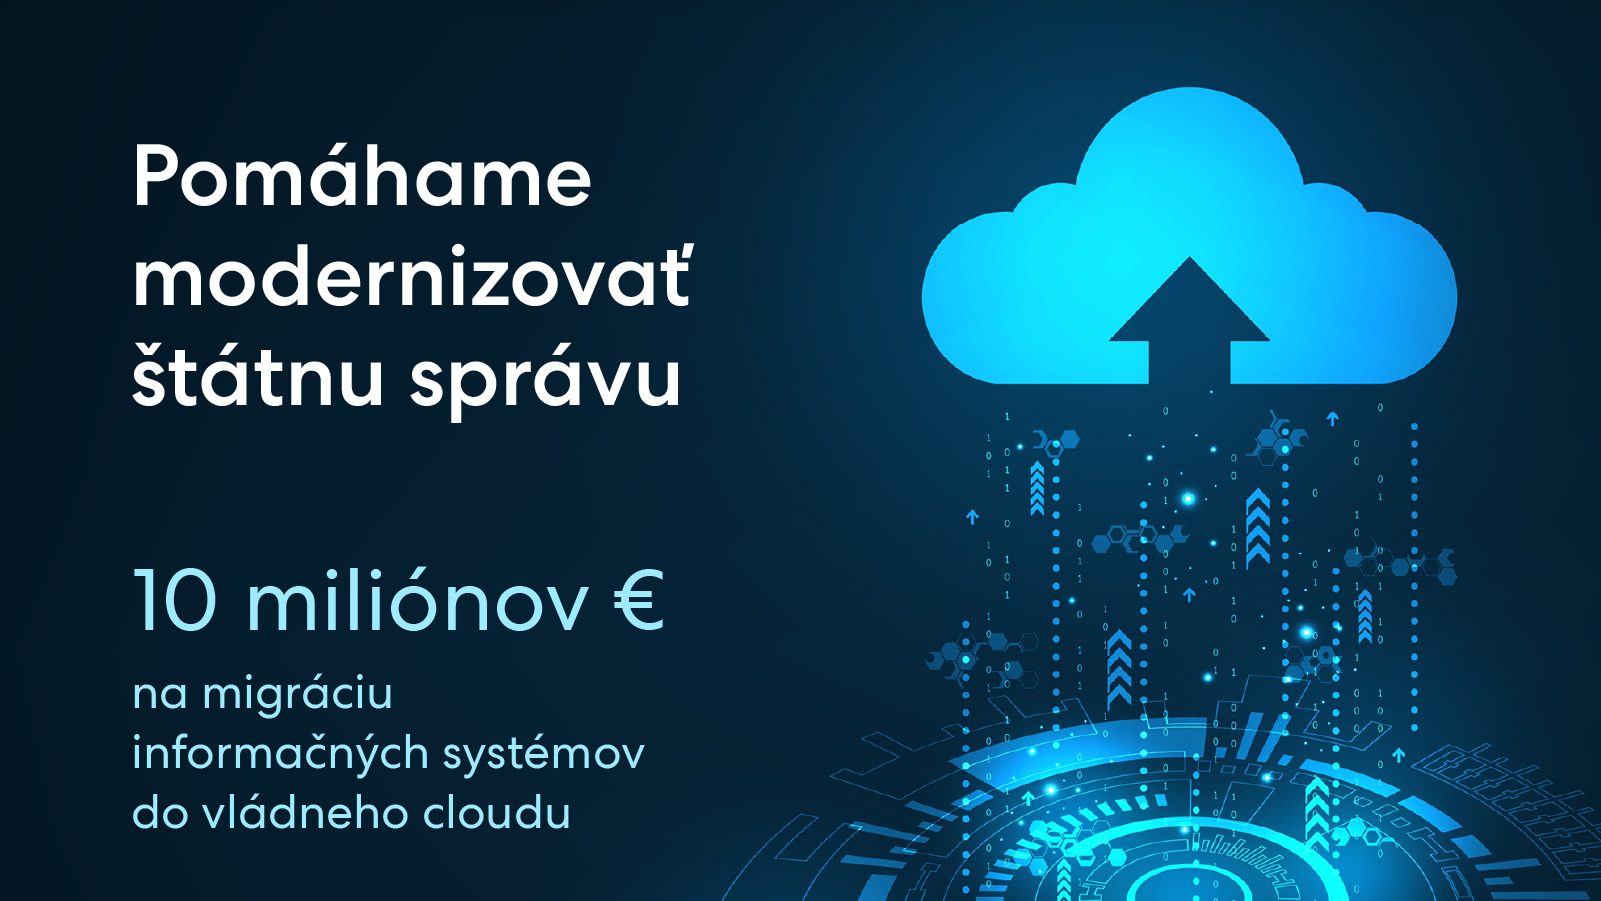 Inštitúciám štátnej správy poskytneme 10 miliónov eur na migráciu informačných systémov do vládneho cloudu